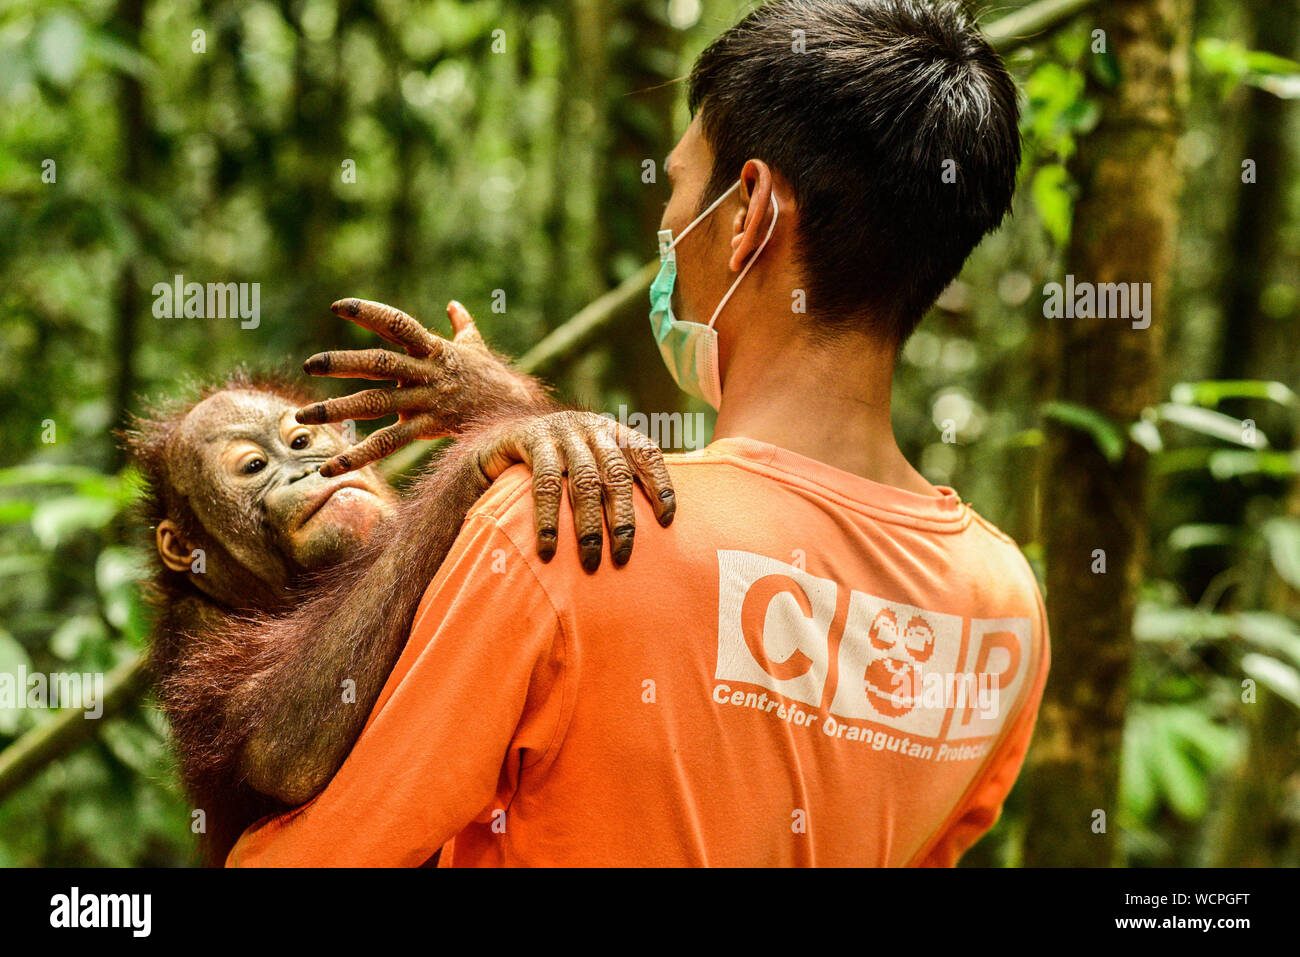 Berau, Indonesia. 28 Agosto, 2019. Un bambino Borneo orangutan Happi denominata, accompagnati da una guardia di conservazione dopo essere stato sottoposto a post-confisca quarantena al un orangutan centro di riabilitazione. Le piantagioni di palma da olio tagliata di vitale importanza primaria e secondaria distruggendo le foreste habitat di animali selvatici compresi in via di estinzione e Bornean orangutan di Sumatra. Il Centro per la protezione Orangutan è la promozione di almeno otto orfani Borneo orangutan. Il programma di orangutan al di sotto dei 5 anni insegna loro a vivere nel loro habitat naturale, prima di rilasciare il loro ritorno nel selvaggio. Foto Stock